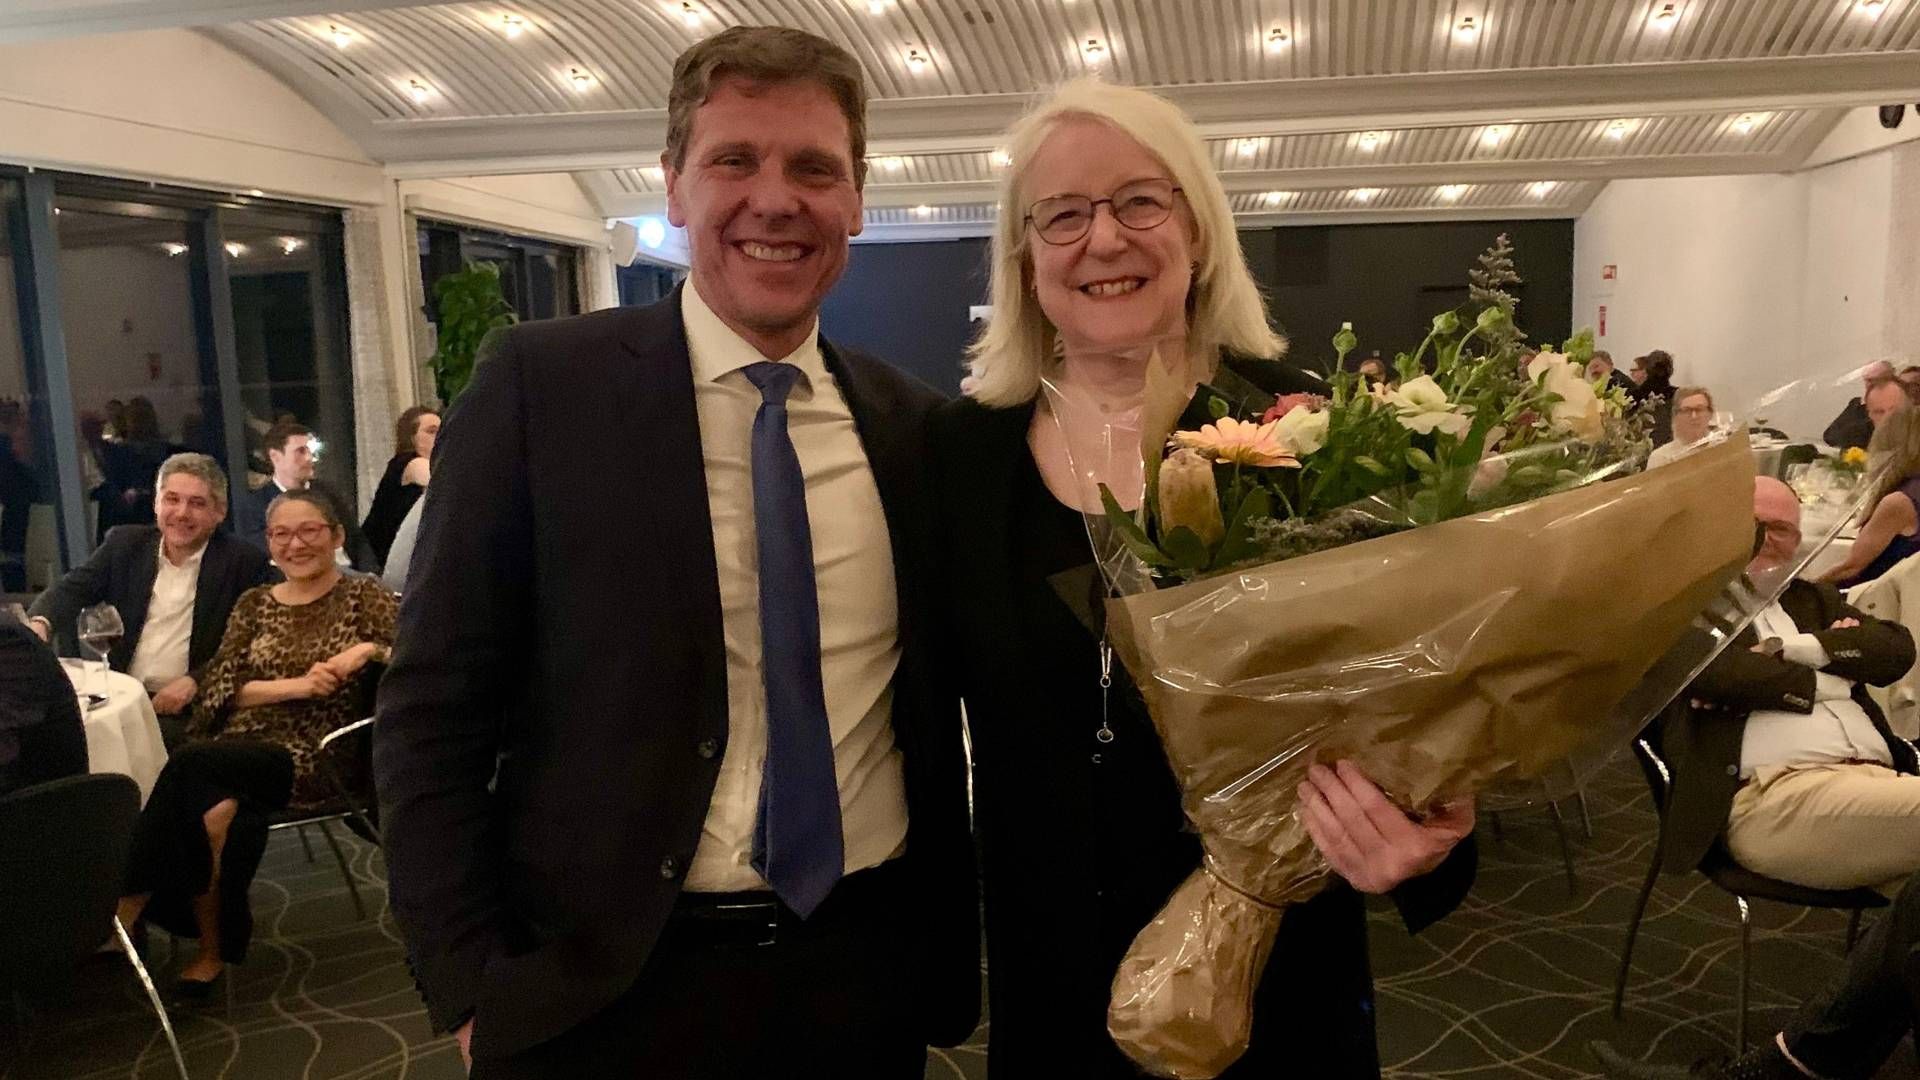 Formanden for Advokatrådet, Martin Lavesen, overrakte torsdag aften hædersprisen til Anne Birgitte Gammeljord ved et arrangement på Hotel Koldingfjord.